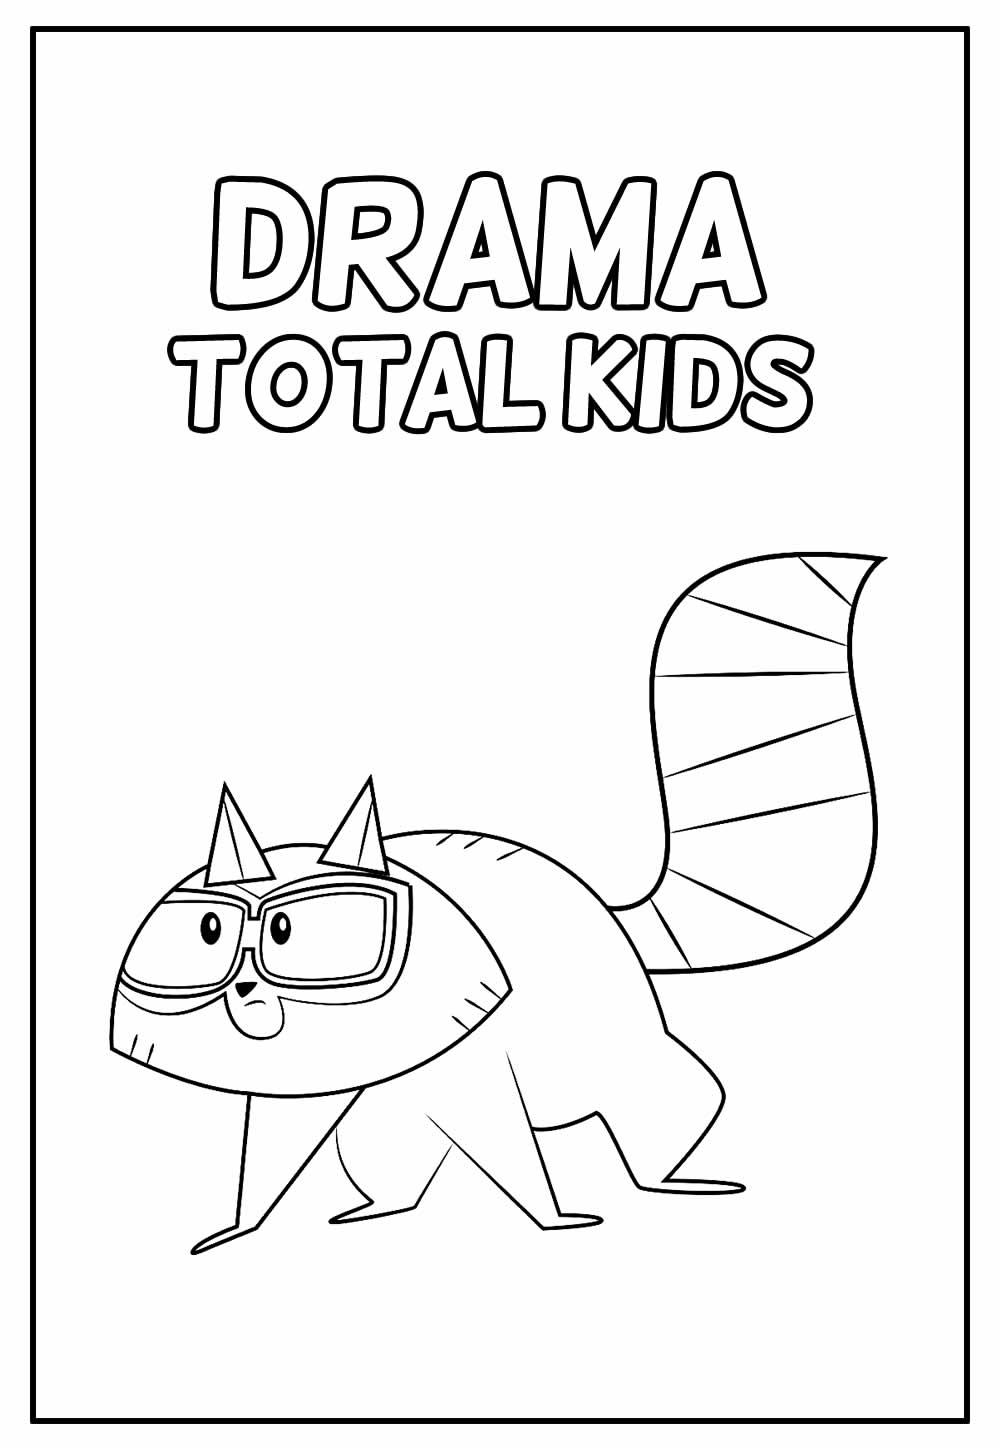 Desenho Educastivo de Drama Total Kids para pintar